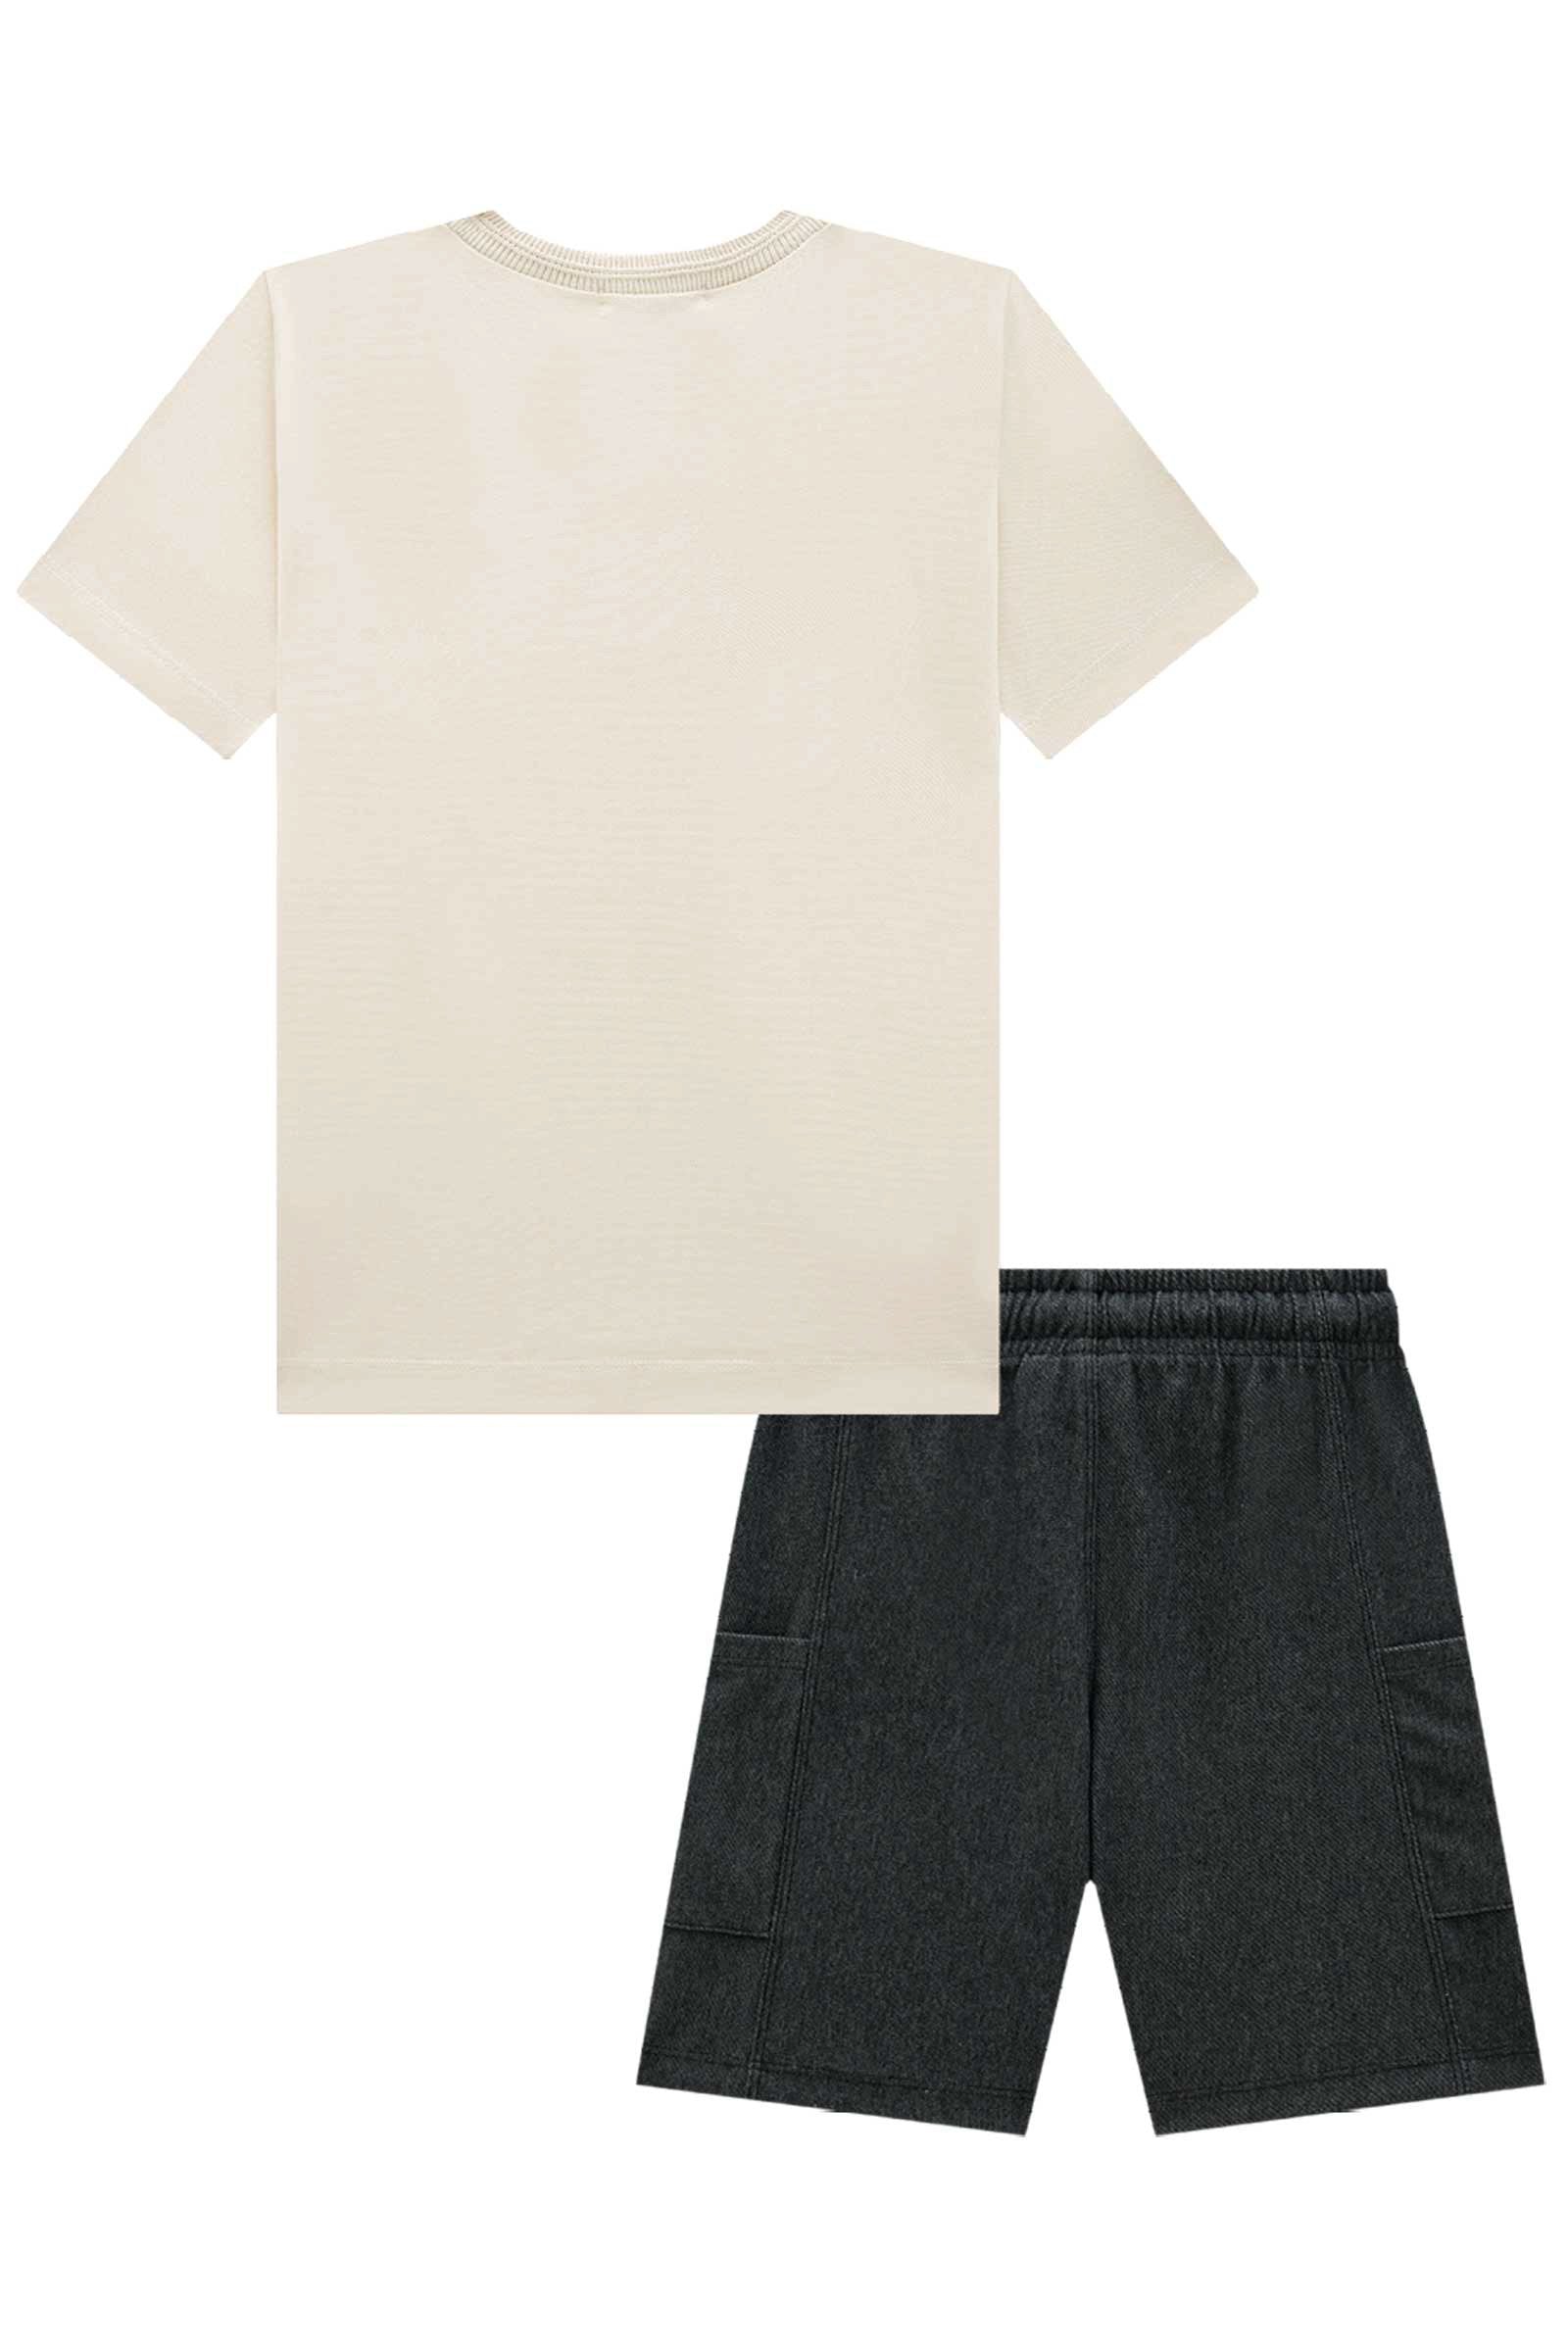 Conjunto de Camiseta em Piquet com Elastano e Bermuda em Cotton Jeans 74702 LucBoo